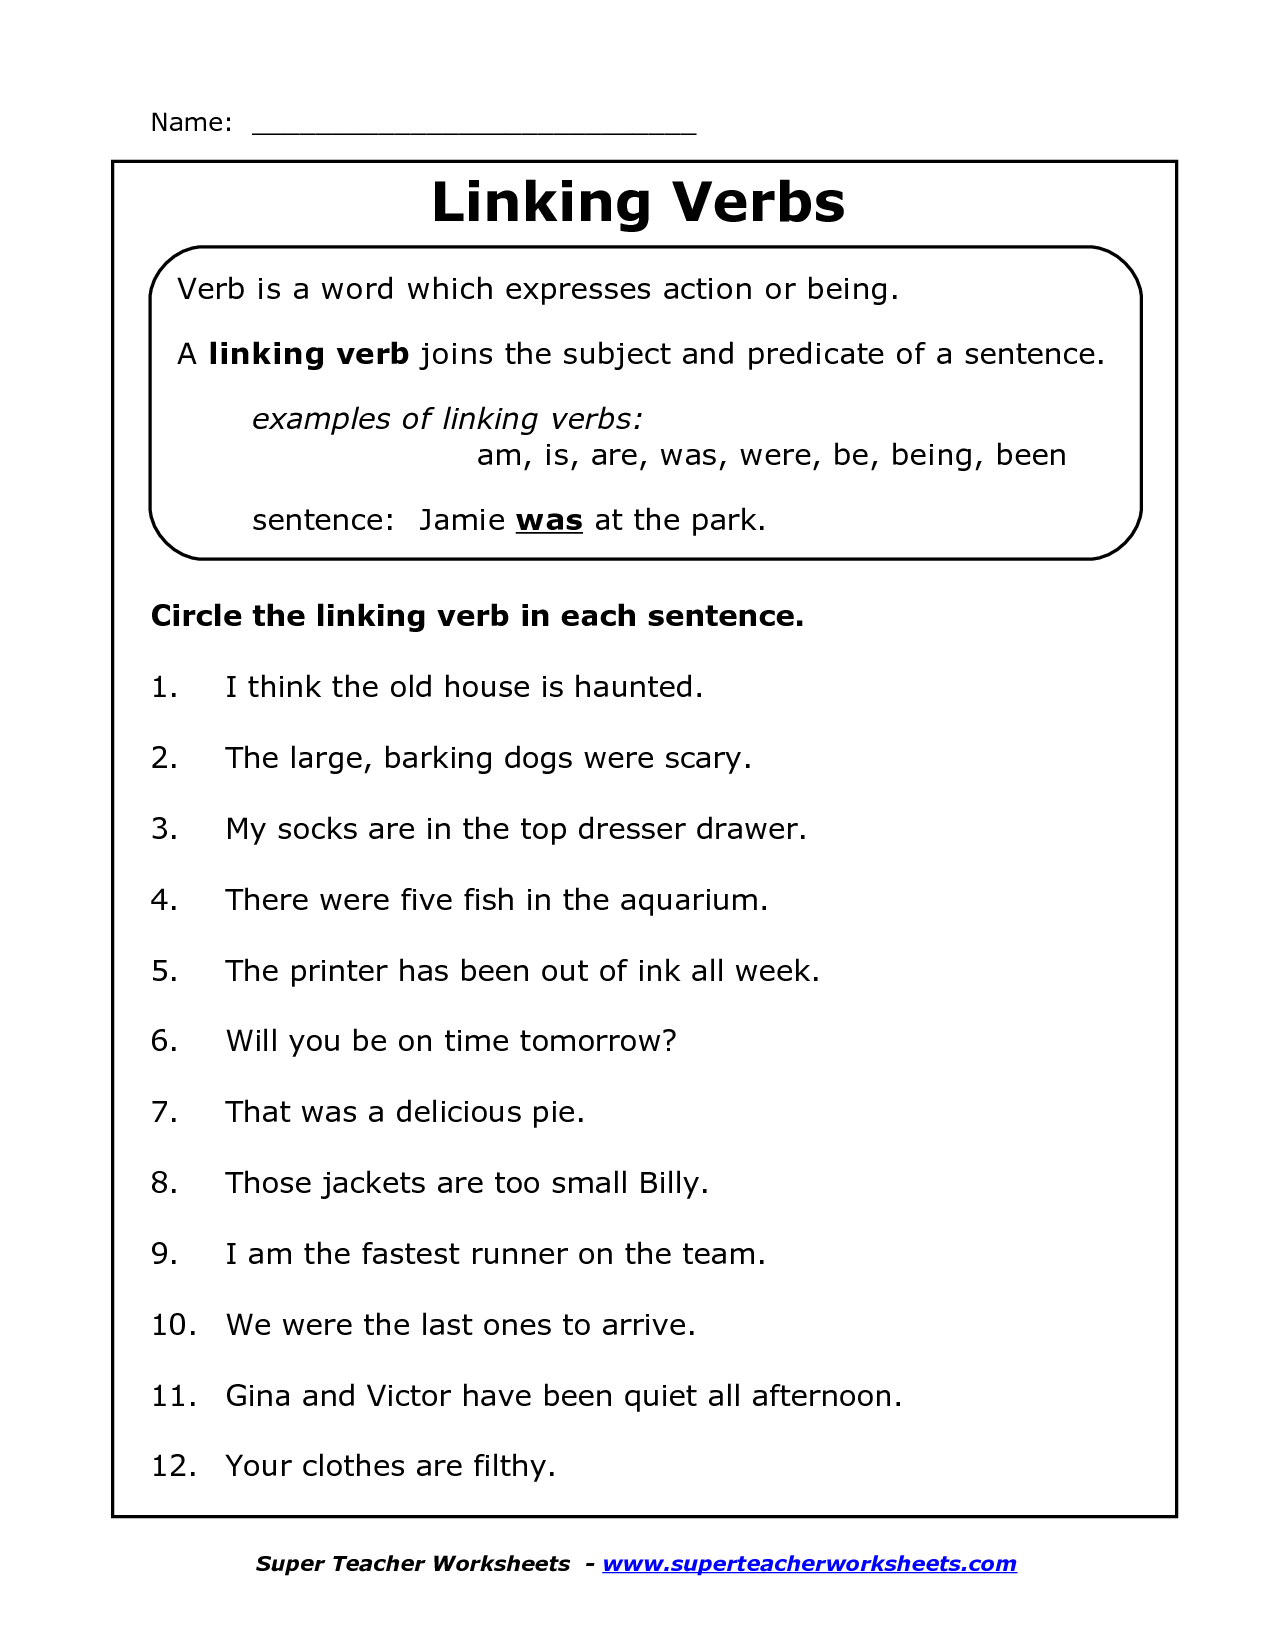 underlining-helping-verbs-worksheet